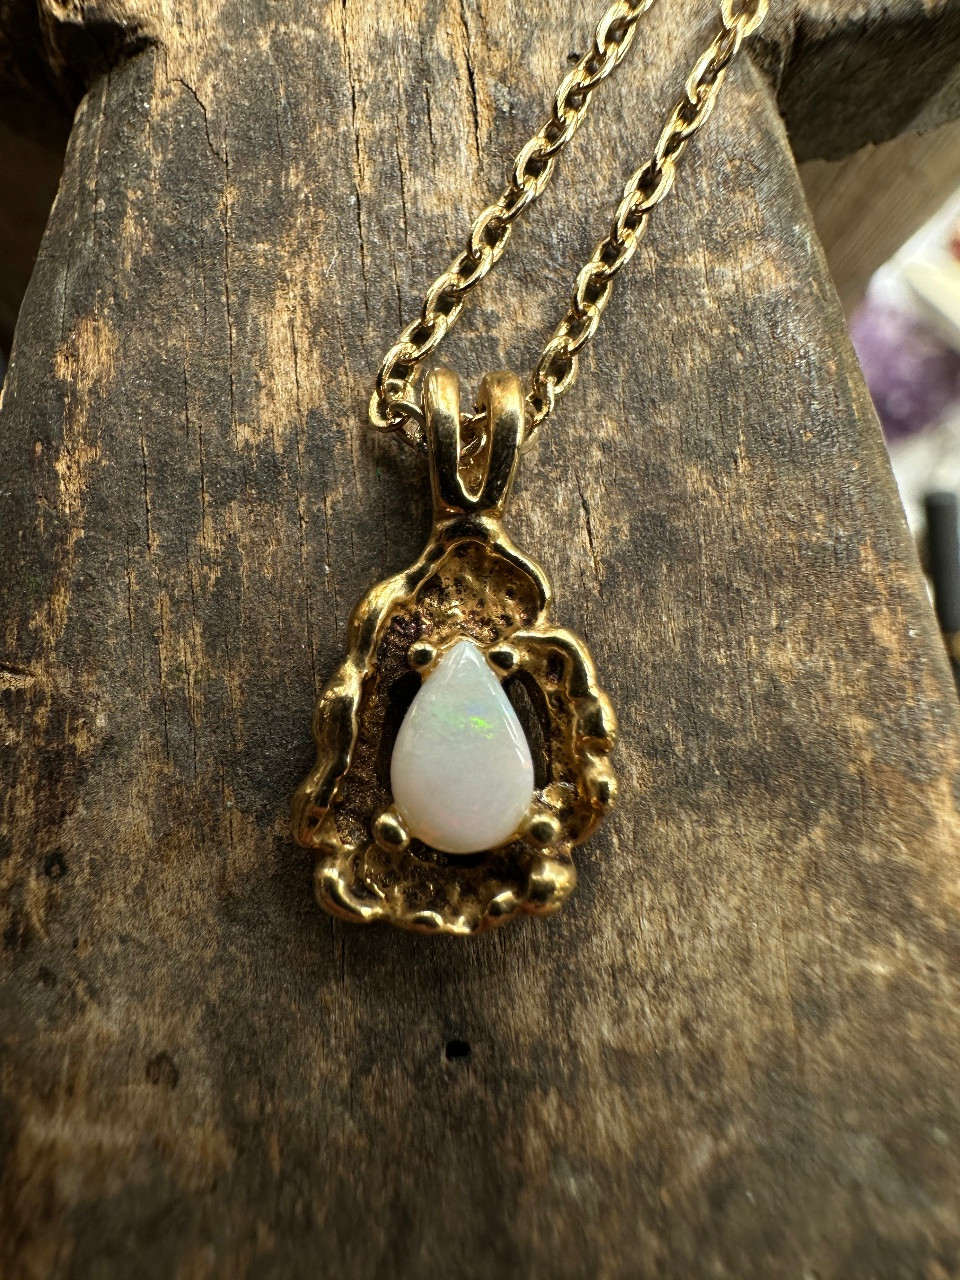 1/20 12k gold filled vintage opal pendant necklace | eBay